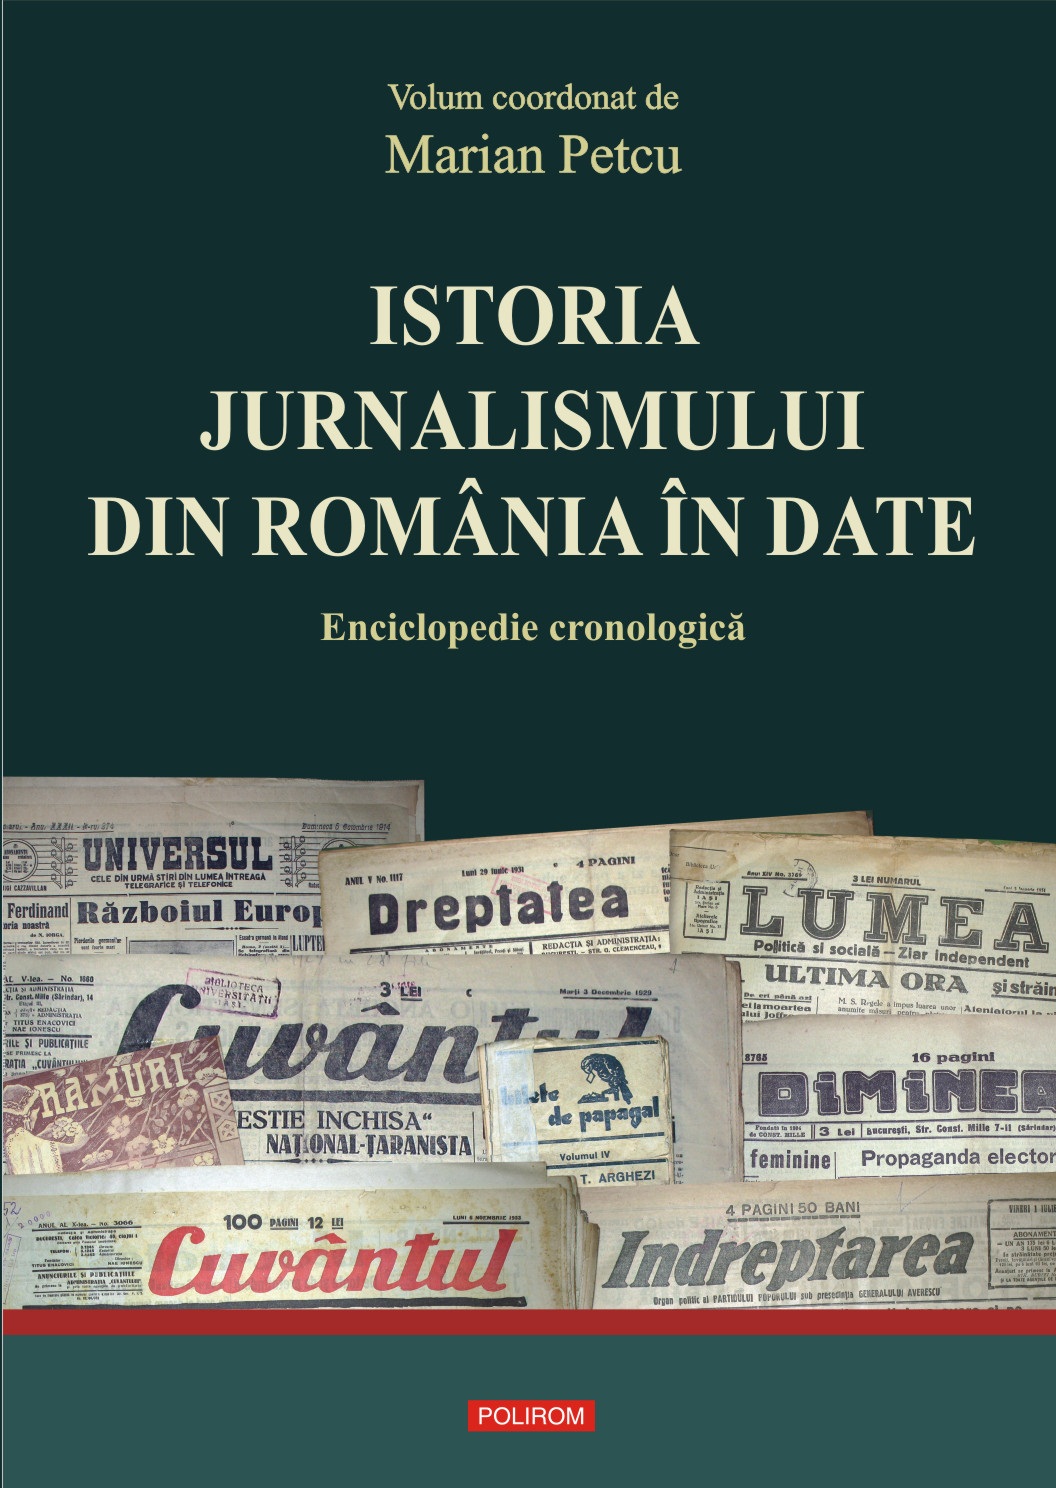  Istoria jurnalismului din Romania in date. Eniclopedie Cronologica - Marian Petcu